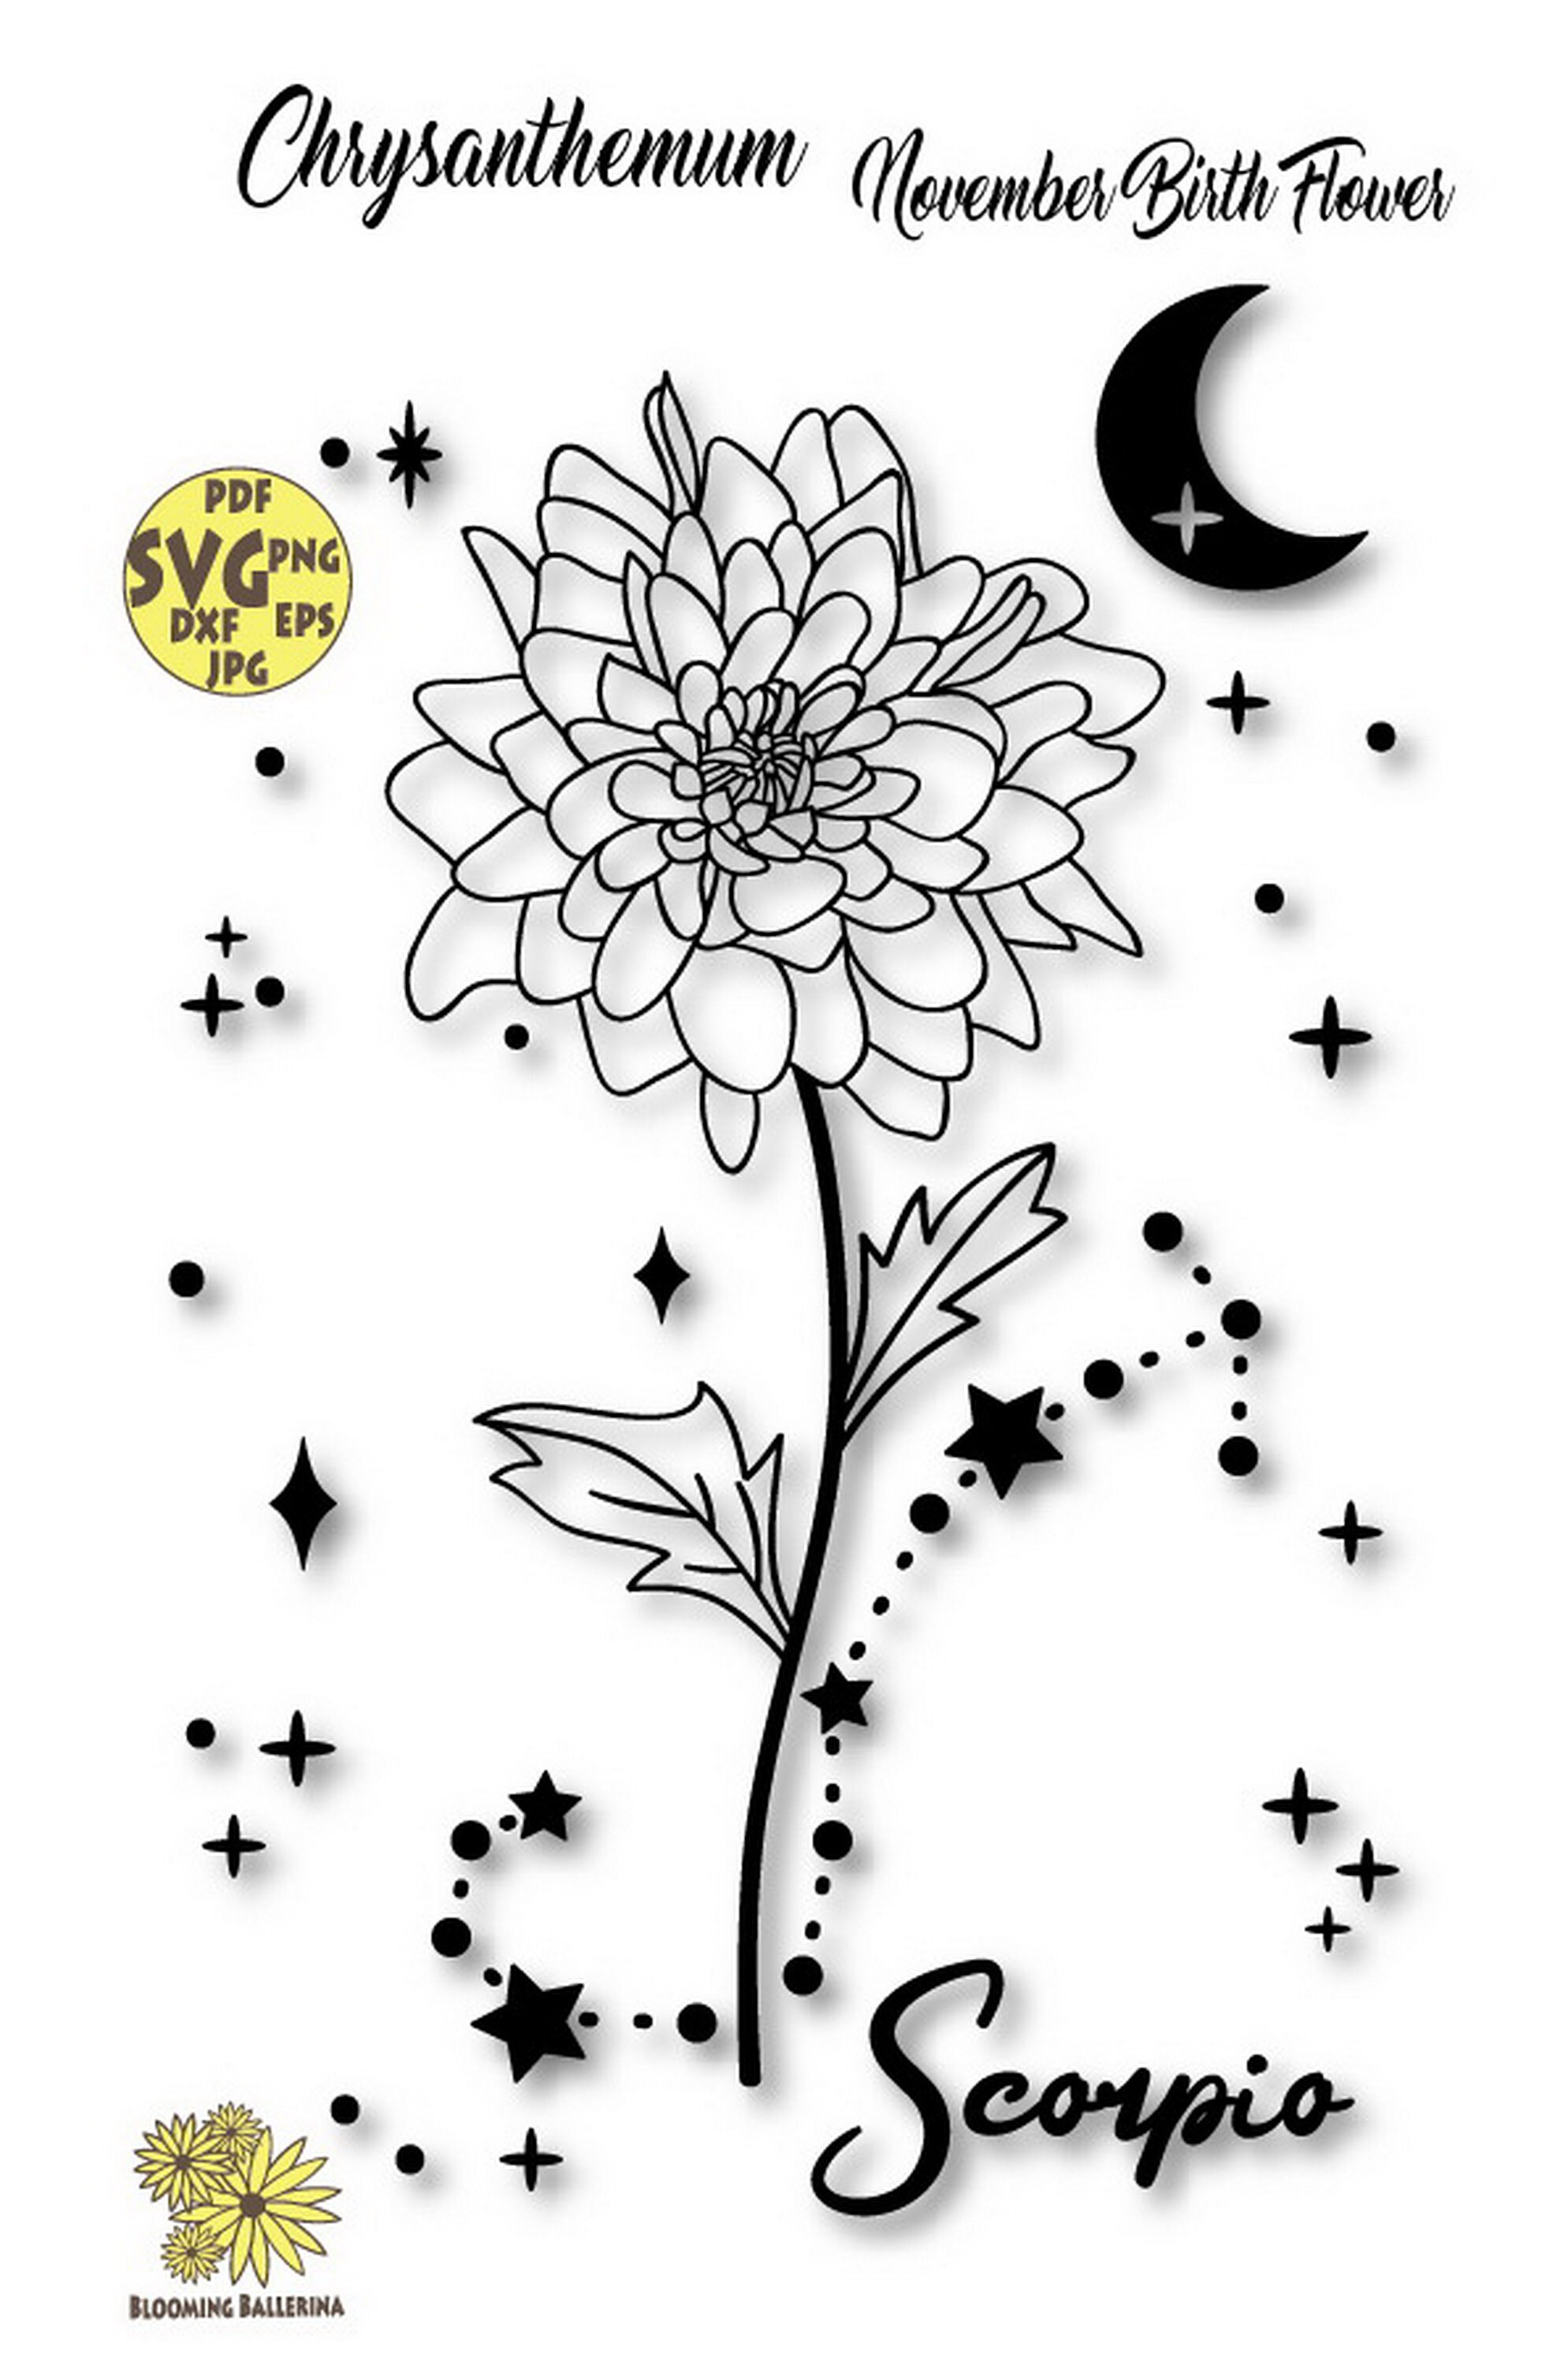 Chrysanthemum Svgnovember Birth Flower Svg Scorpio Svg - Etsy